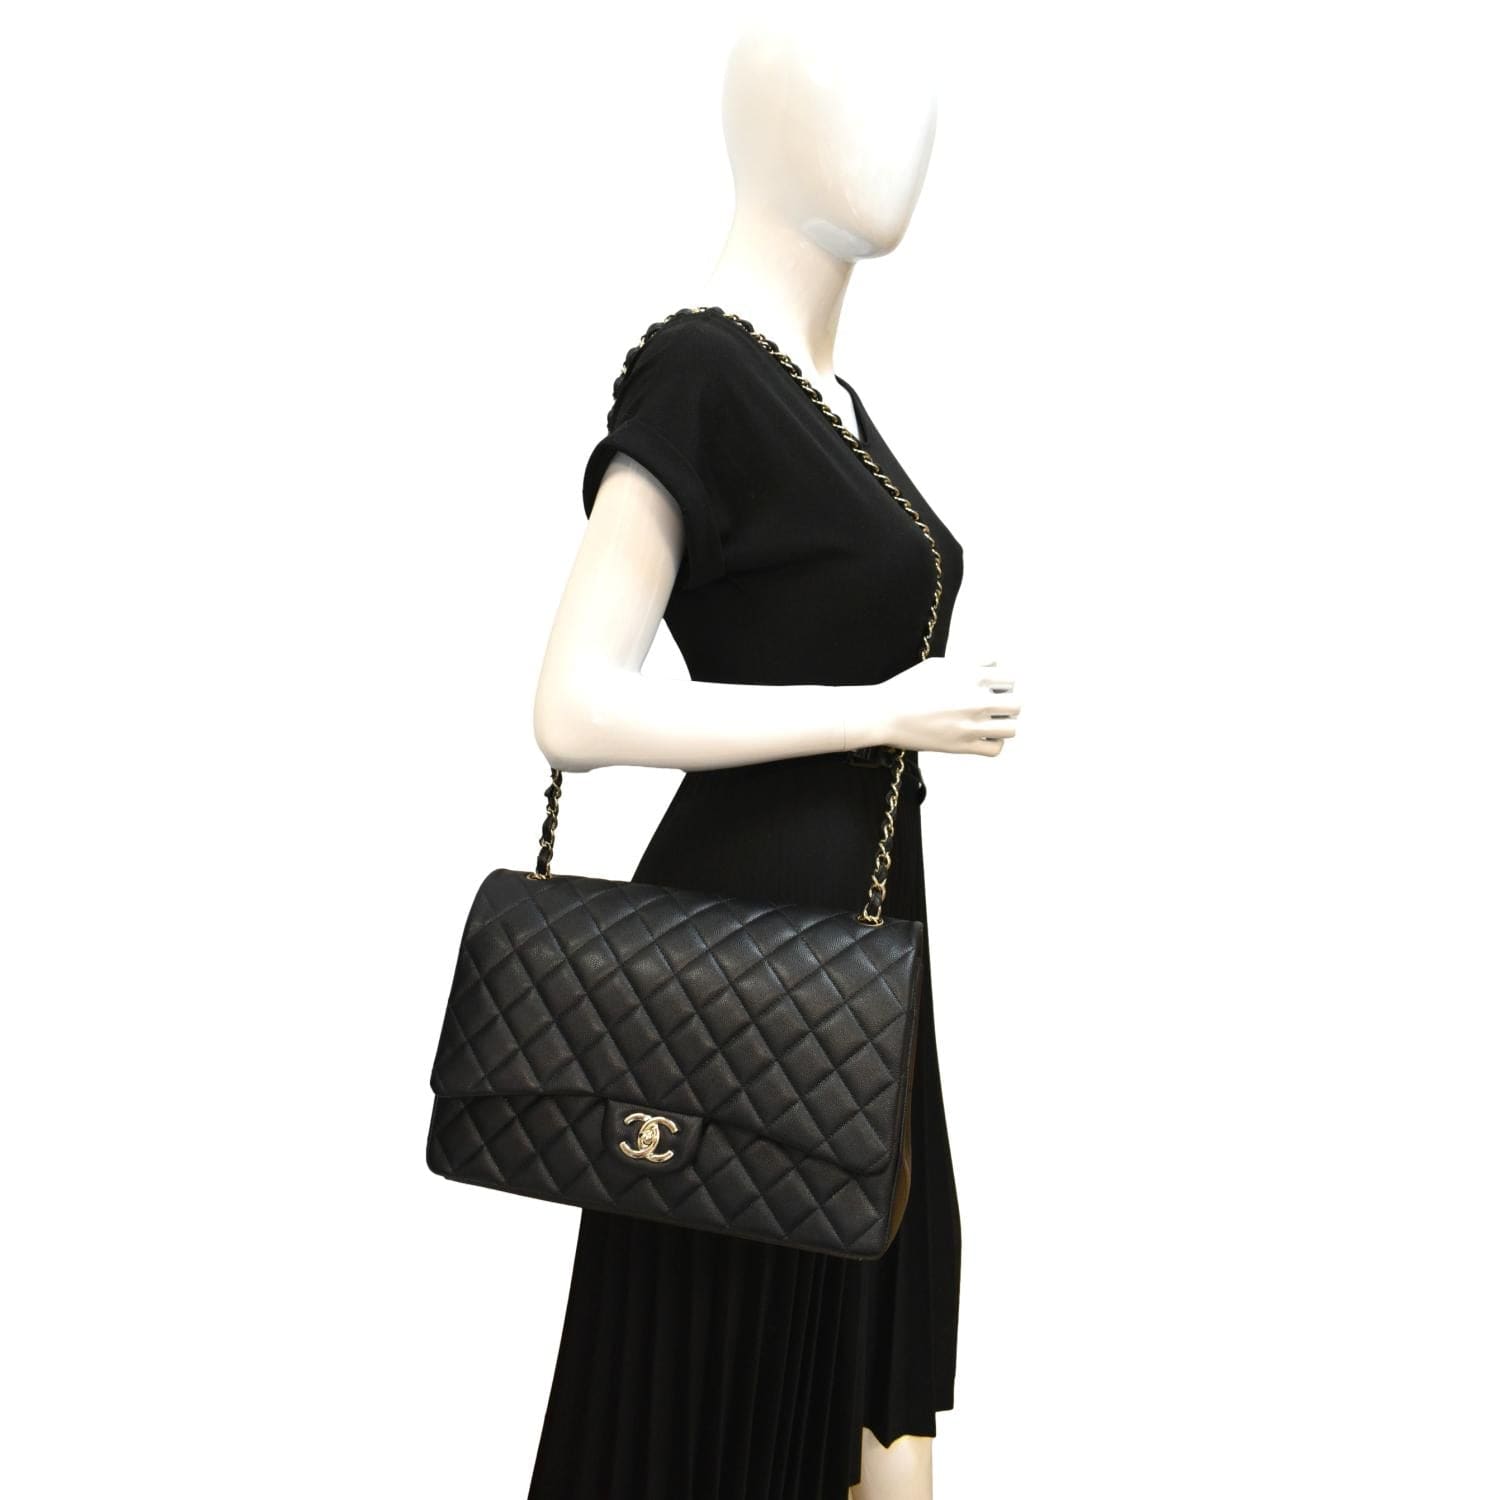 Chanel Maxi Flap Shoulder Bag